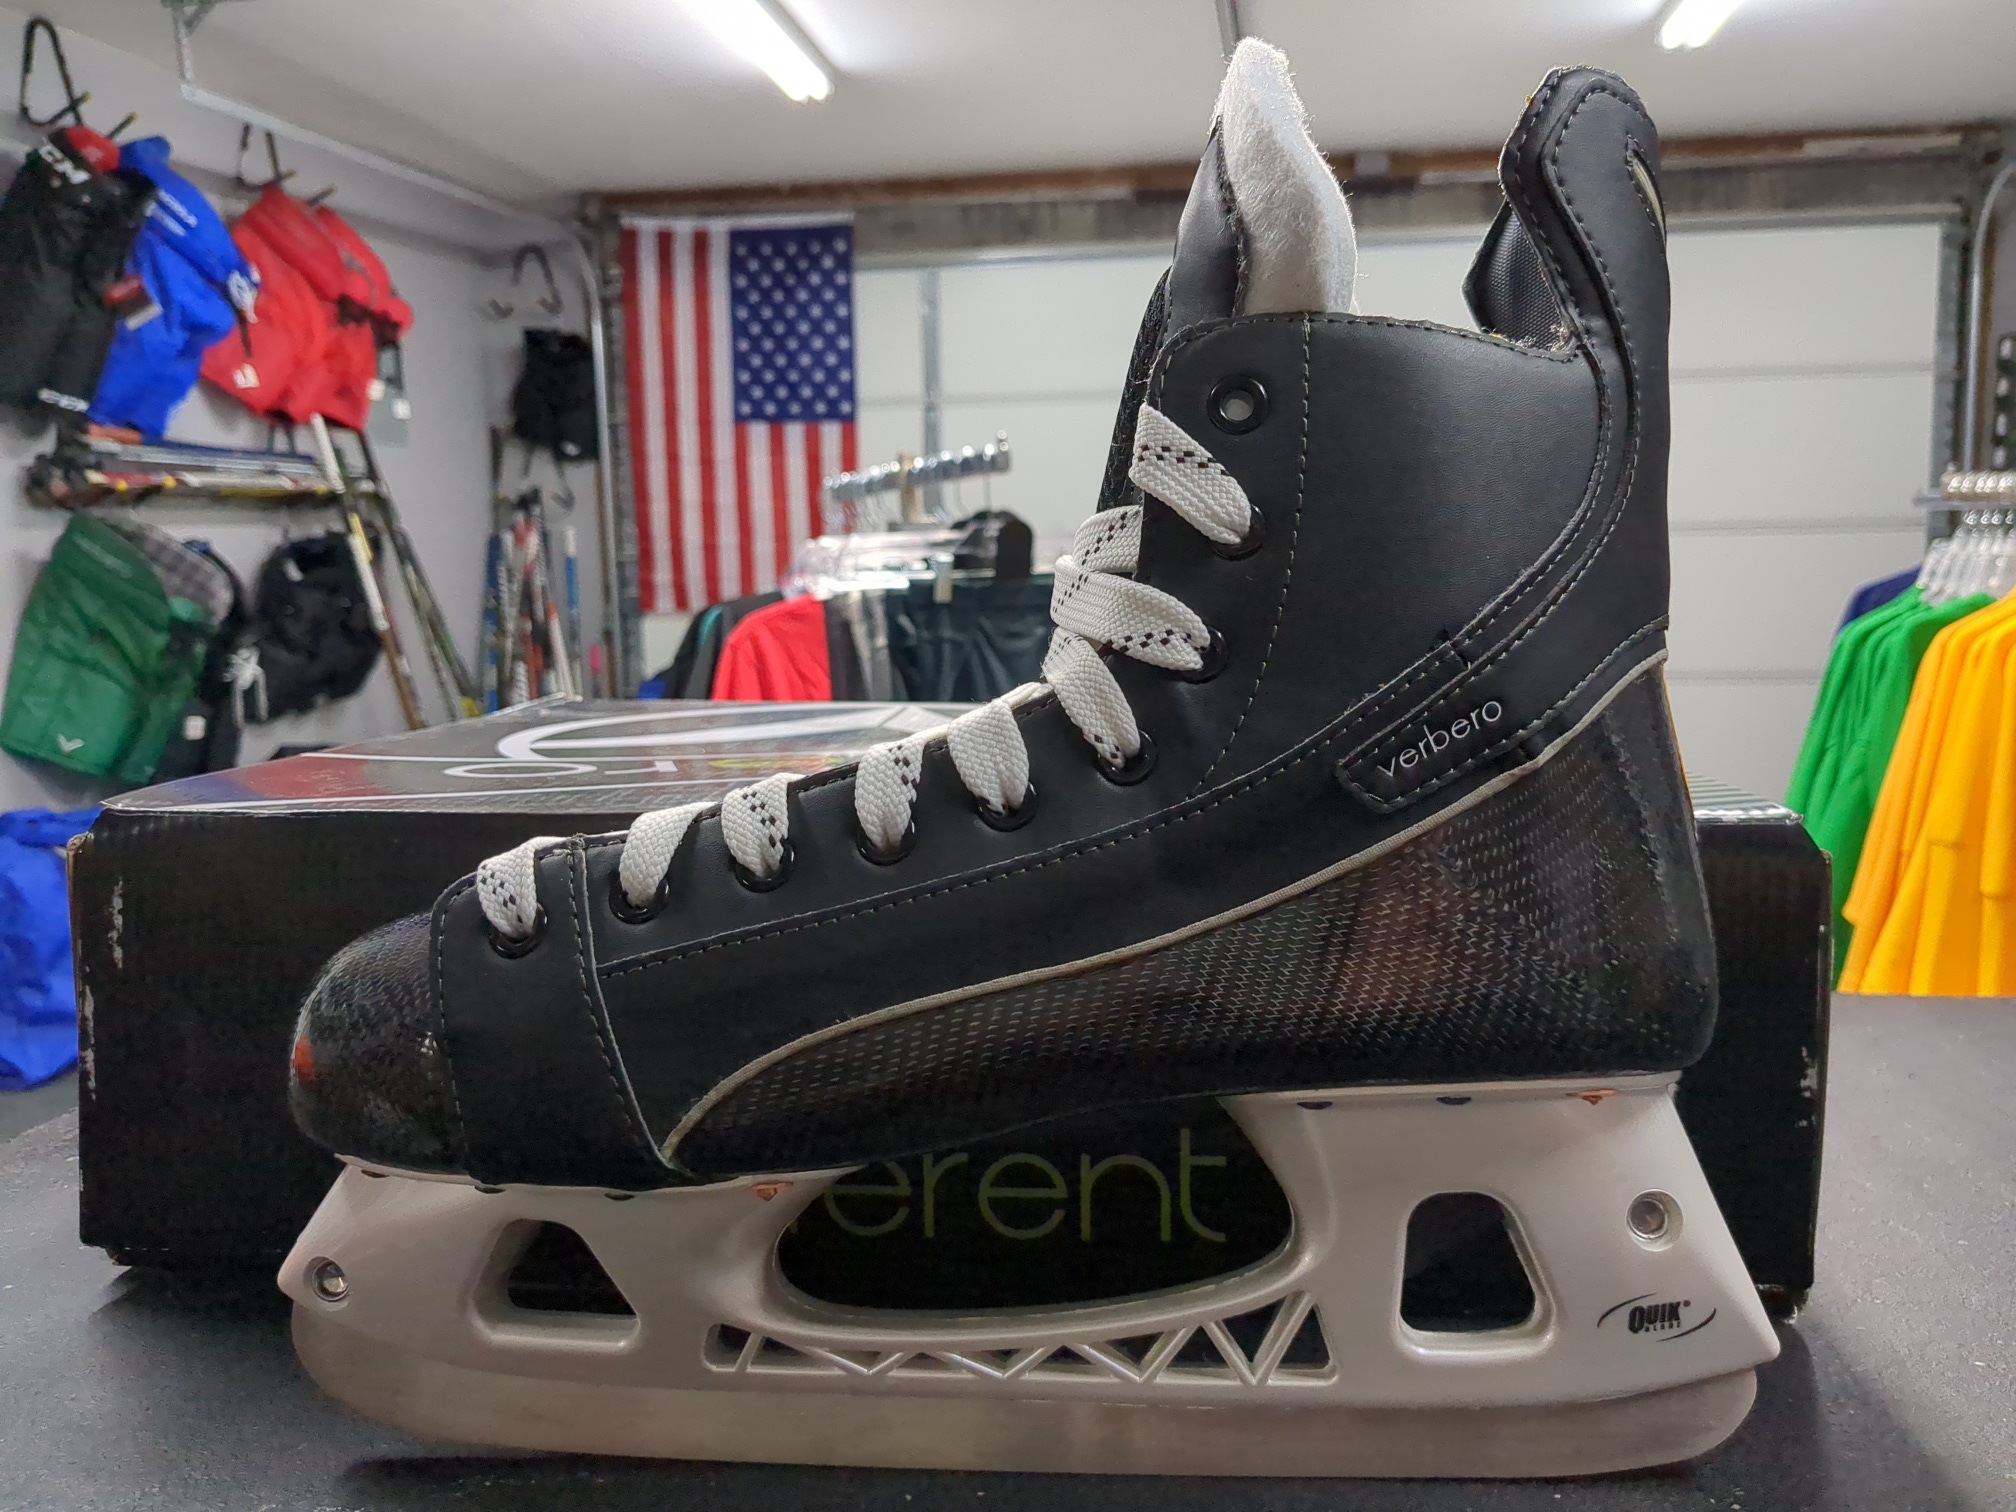 Senior New Verbero VORTEX Hockey Skates Size 12